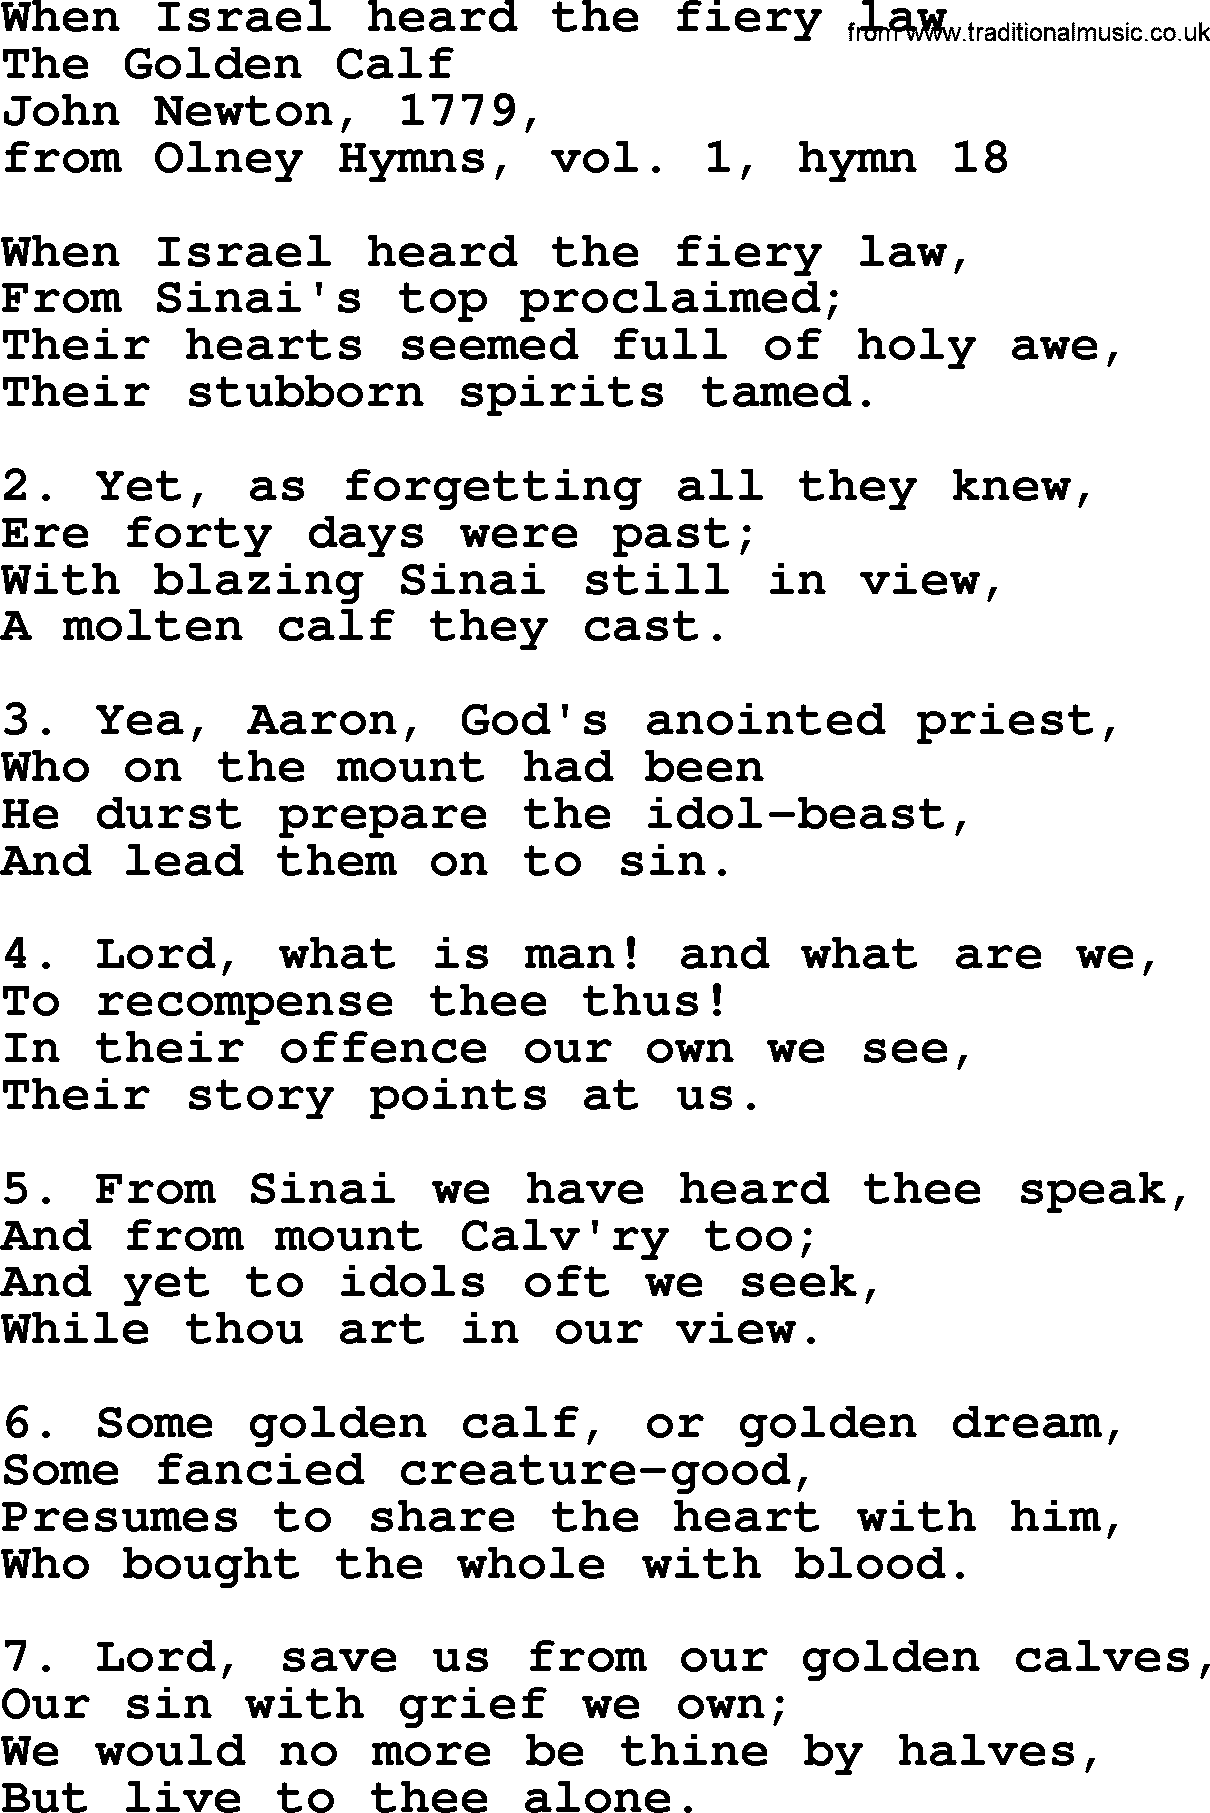 John Newton hymn: When Israel Heard The Fiery Law, lyrics